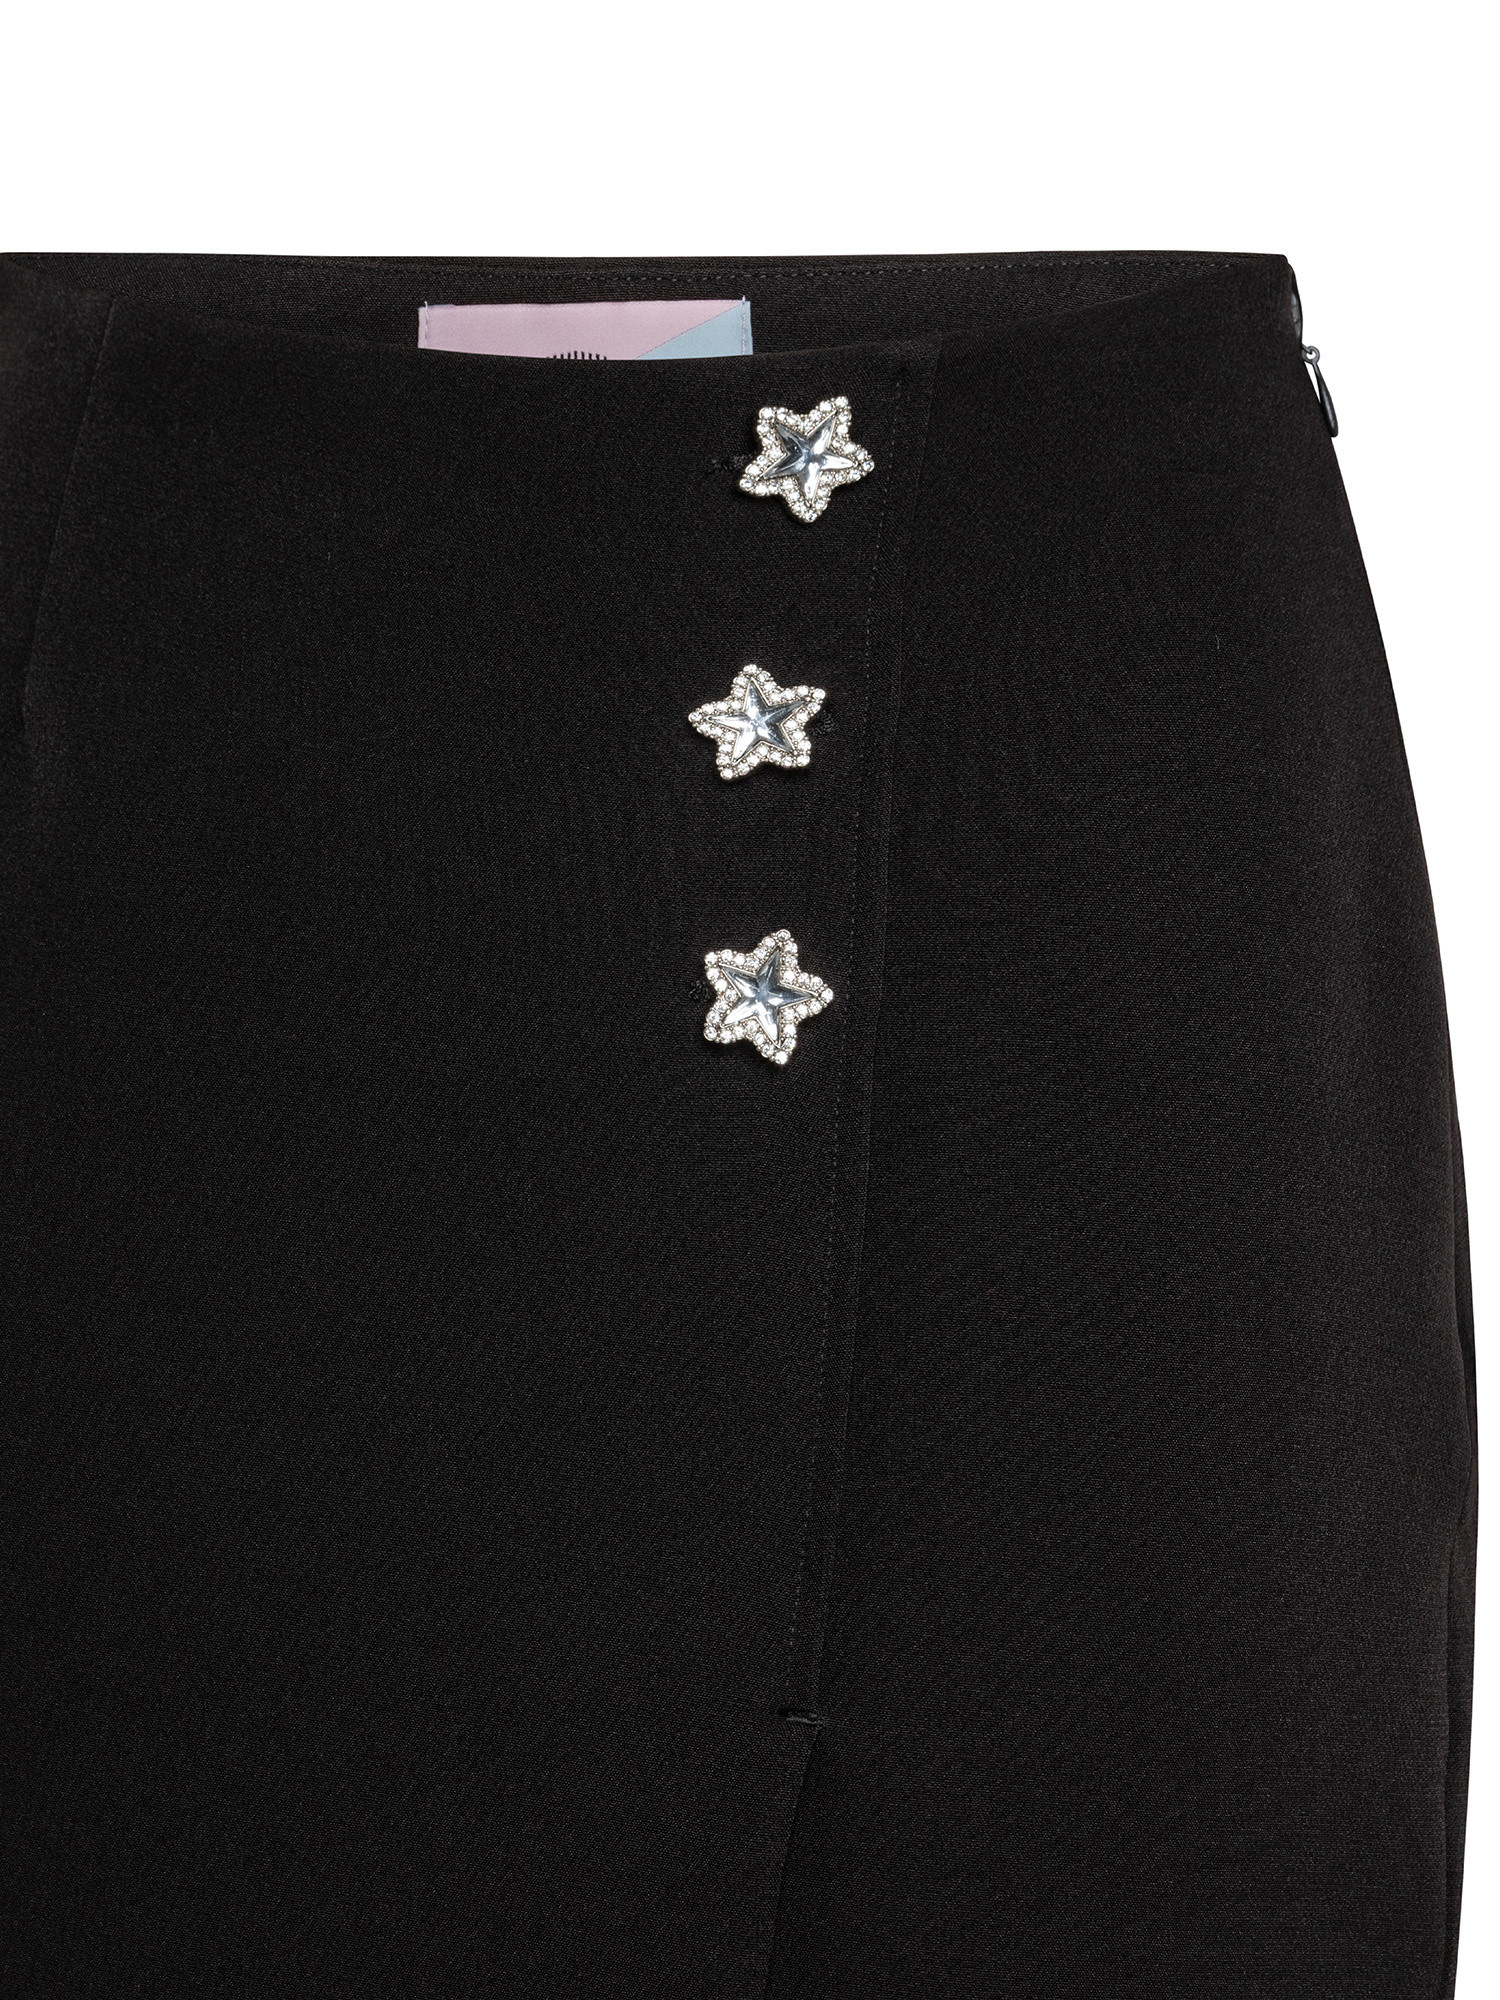 Skirt, Black, large image number 2